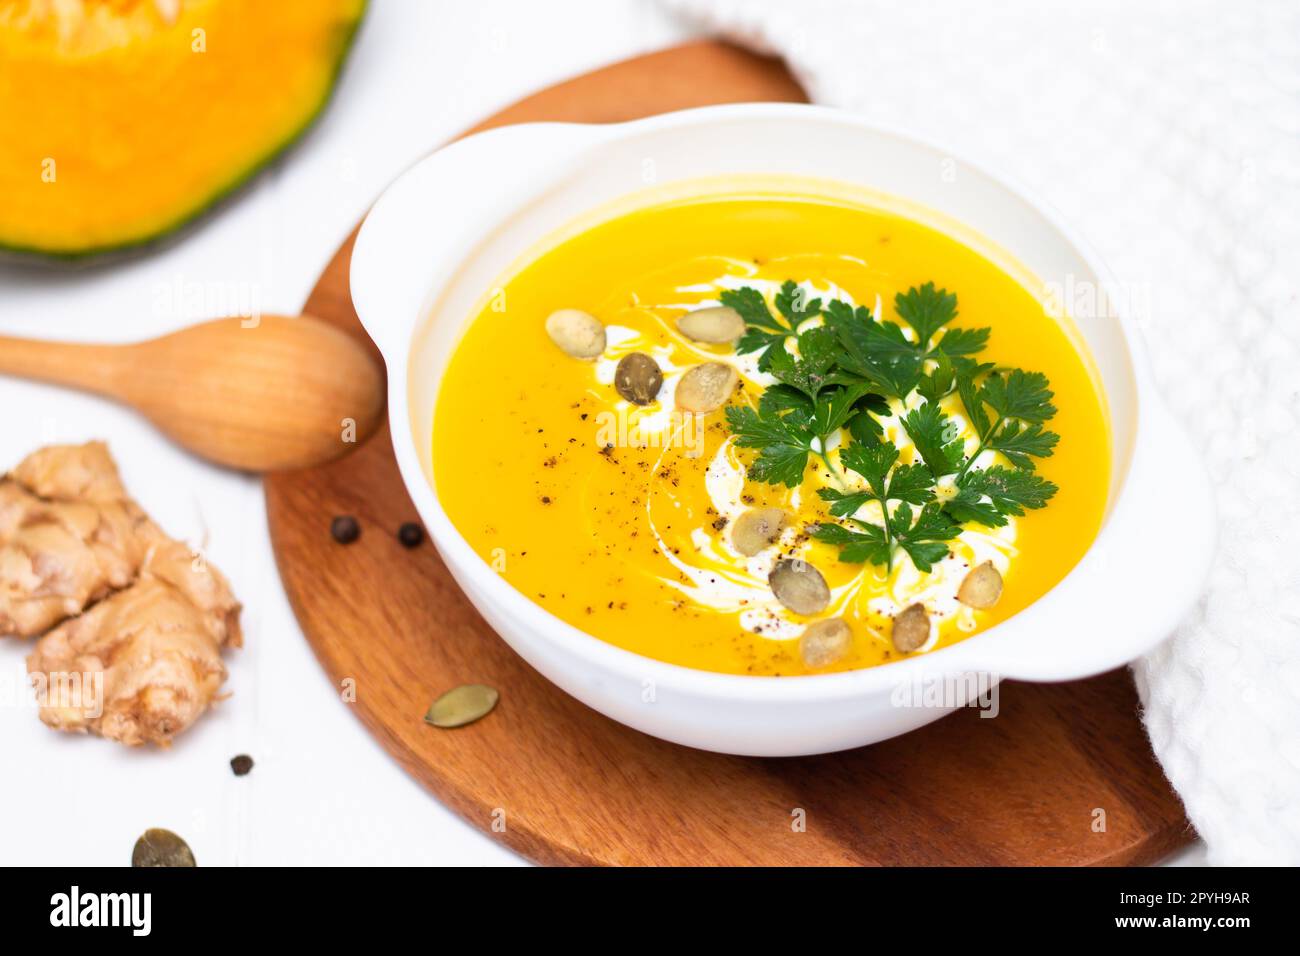 Un piatto di zuppa di crema di zucca gialla con crema, erbe e semi su un tavolo bianco vicino alla zucca cruda e un cucchiaio di legno. Foto Stock